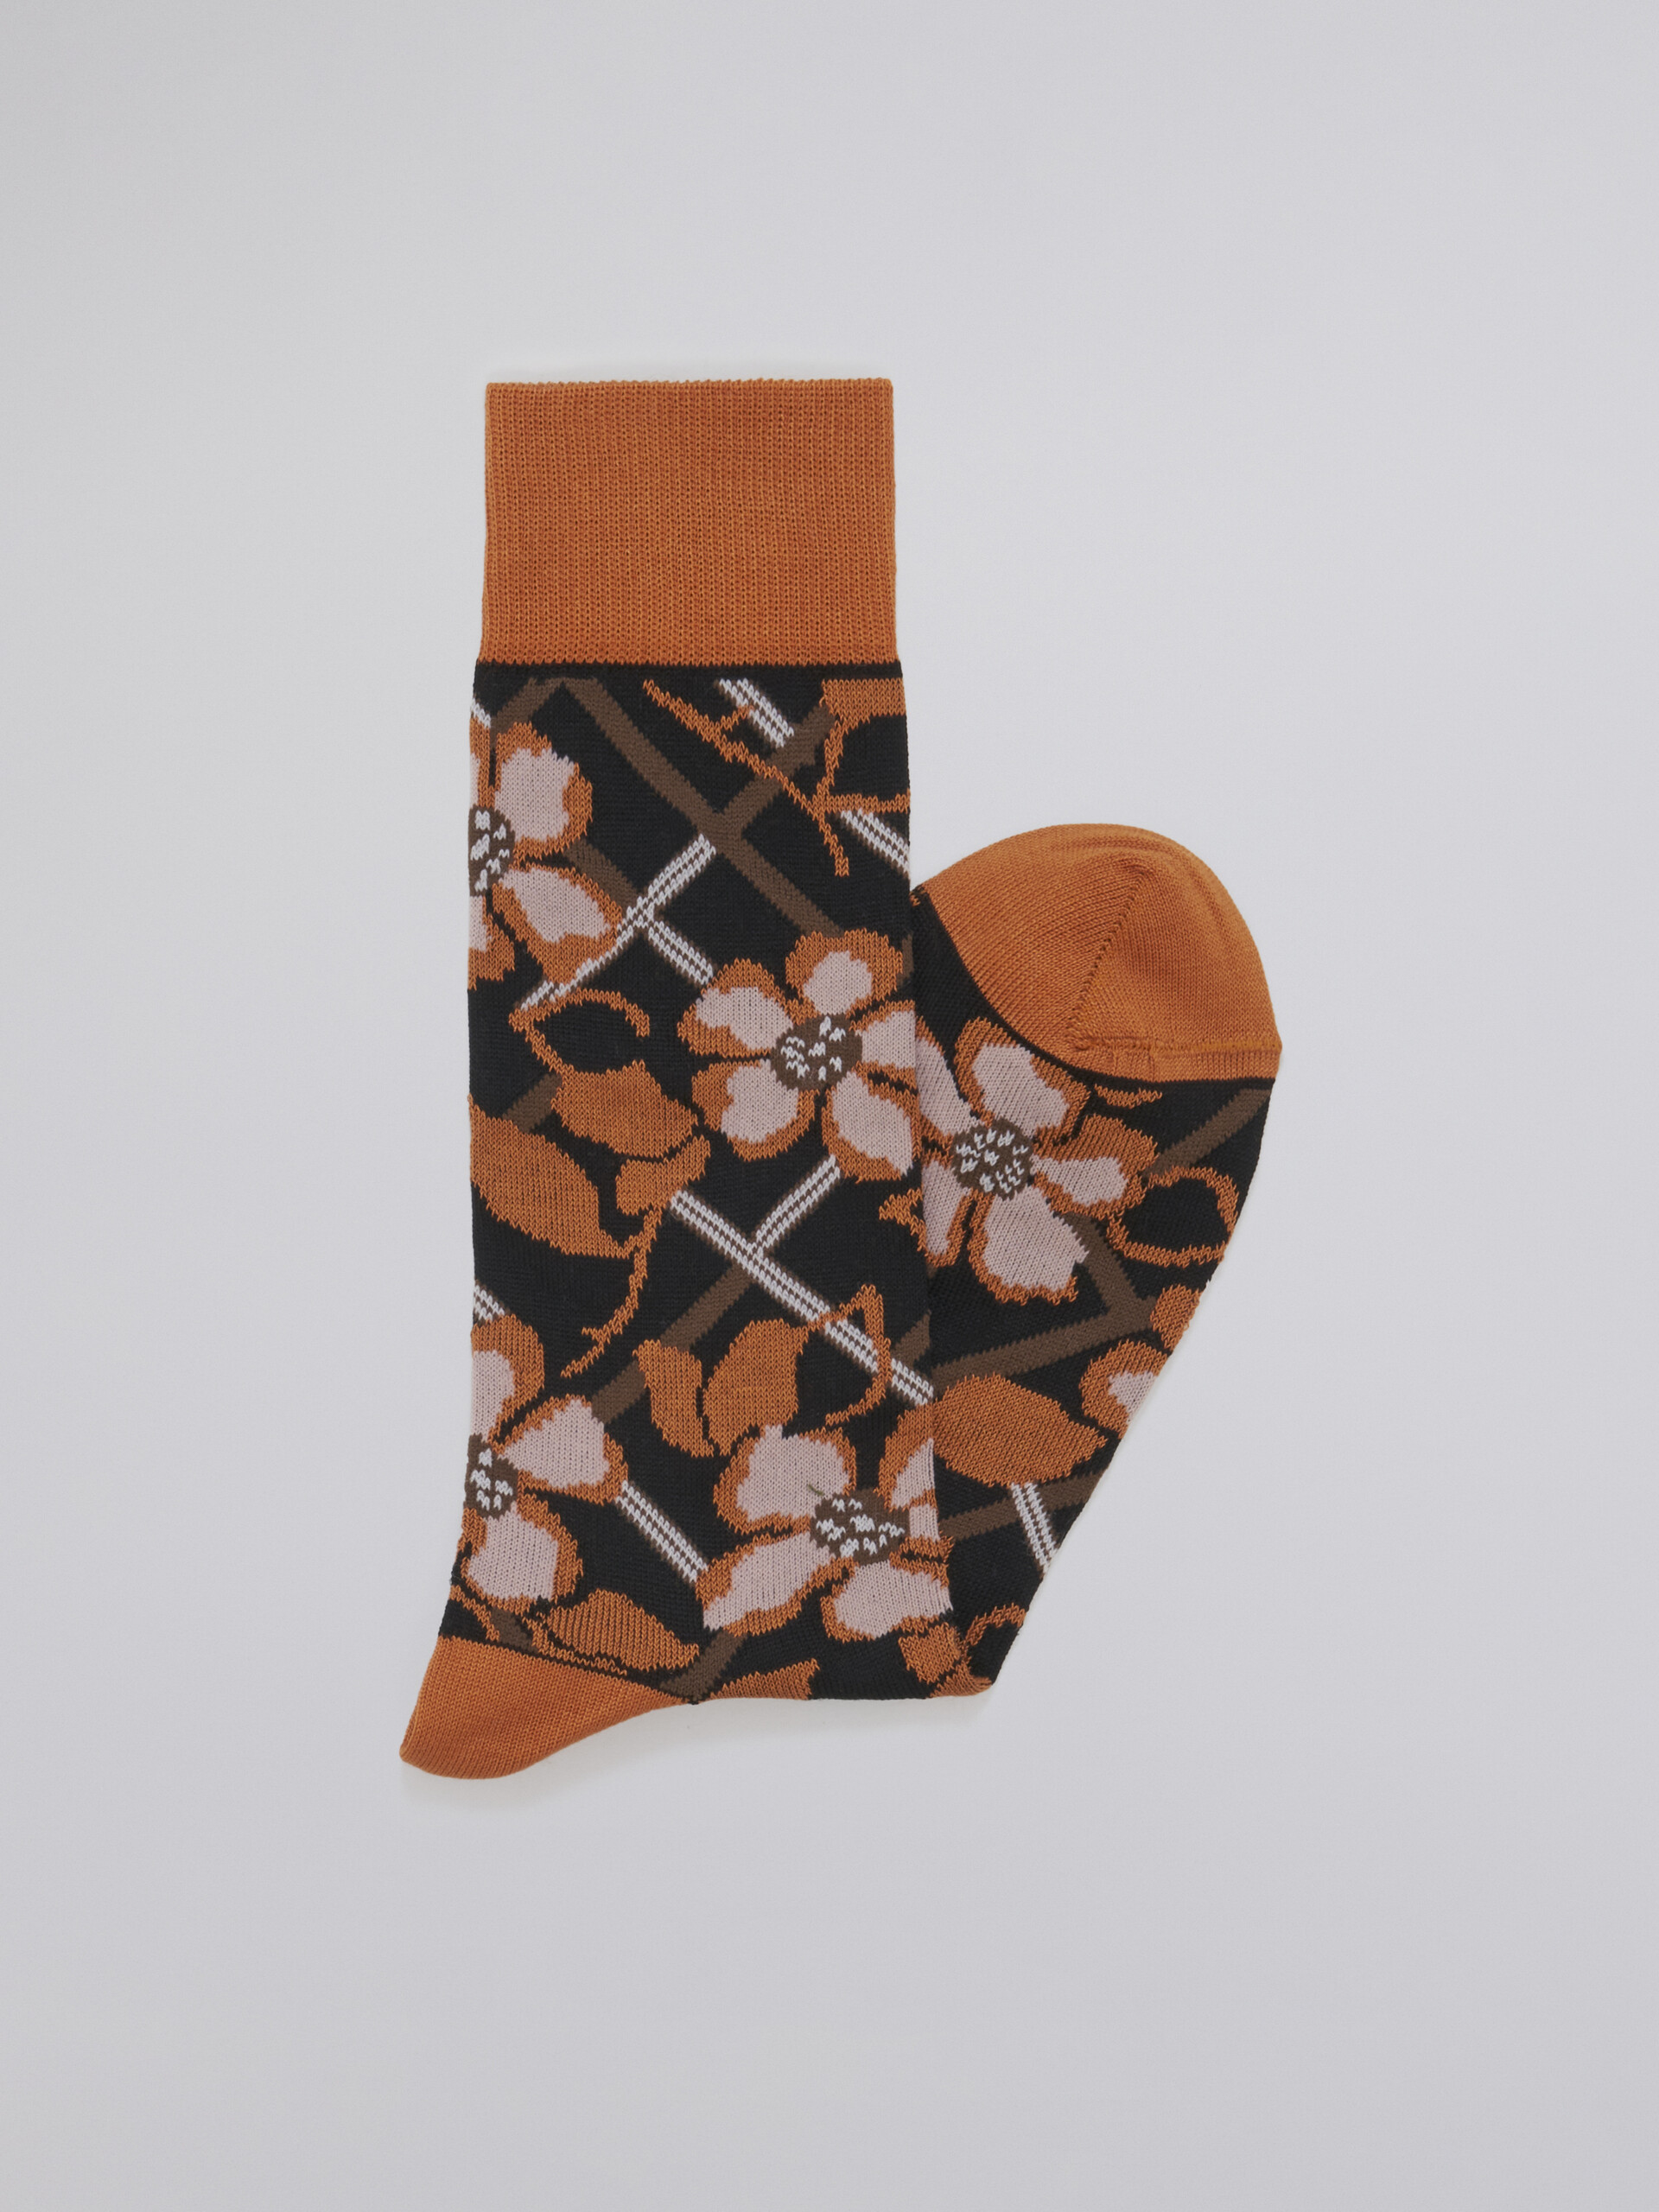 Black floral cotton and nylon jacquard sock - Socks - Image 2